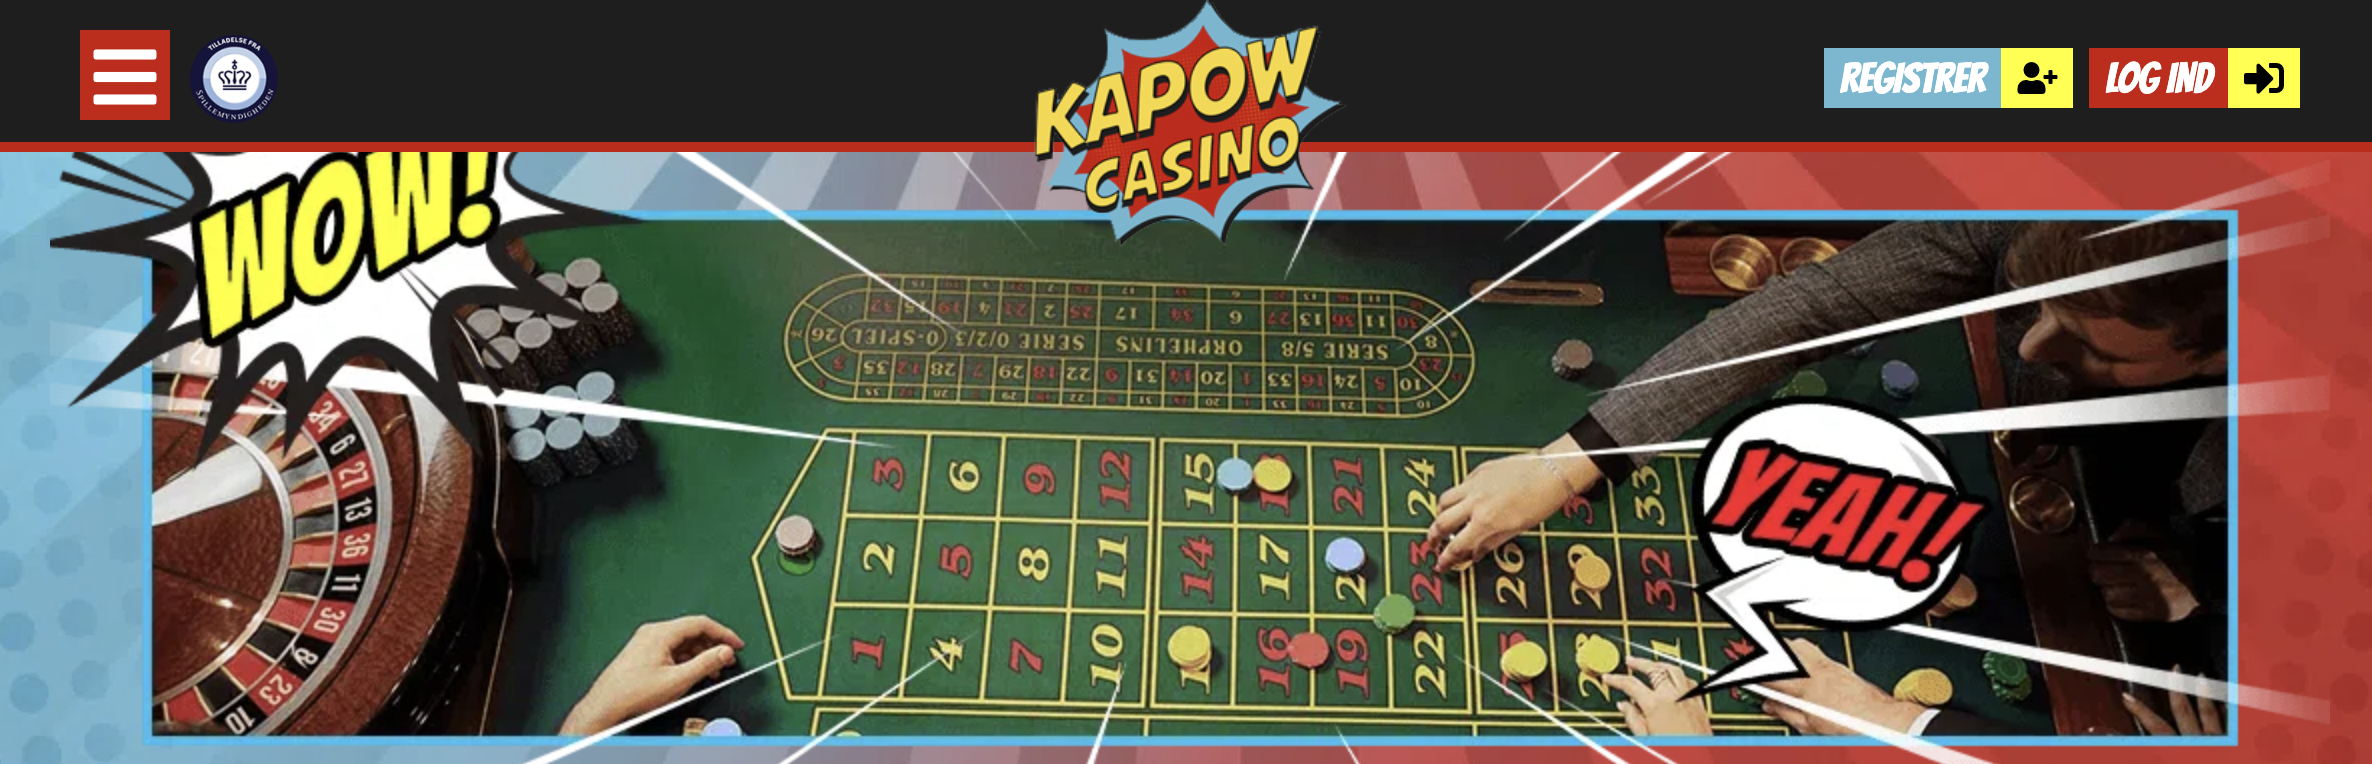 Kapow live casino